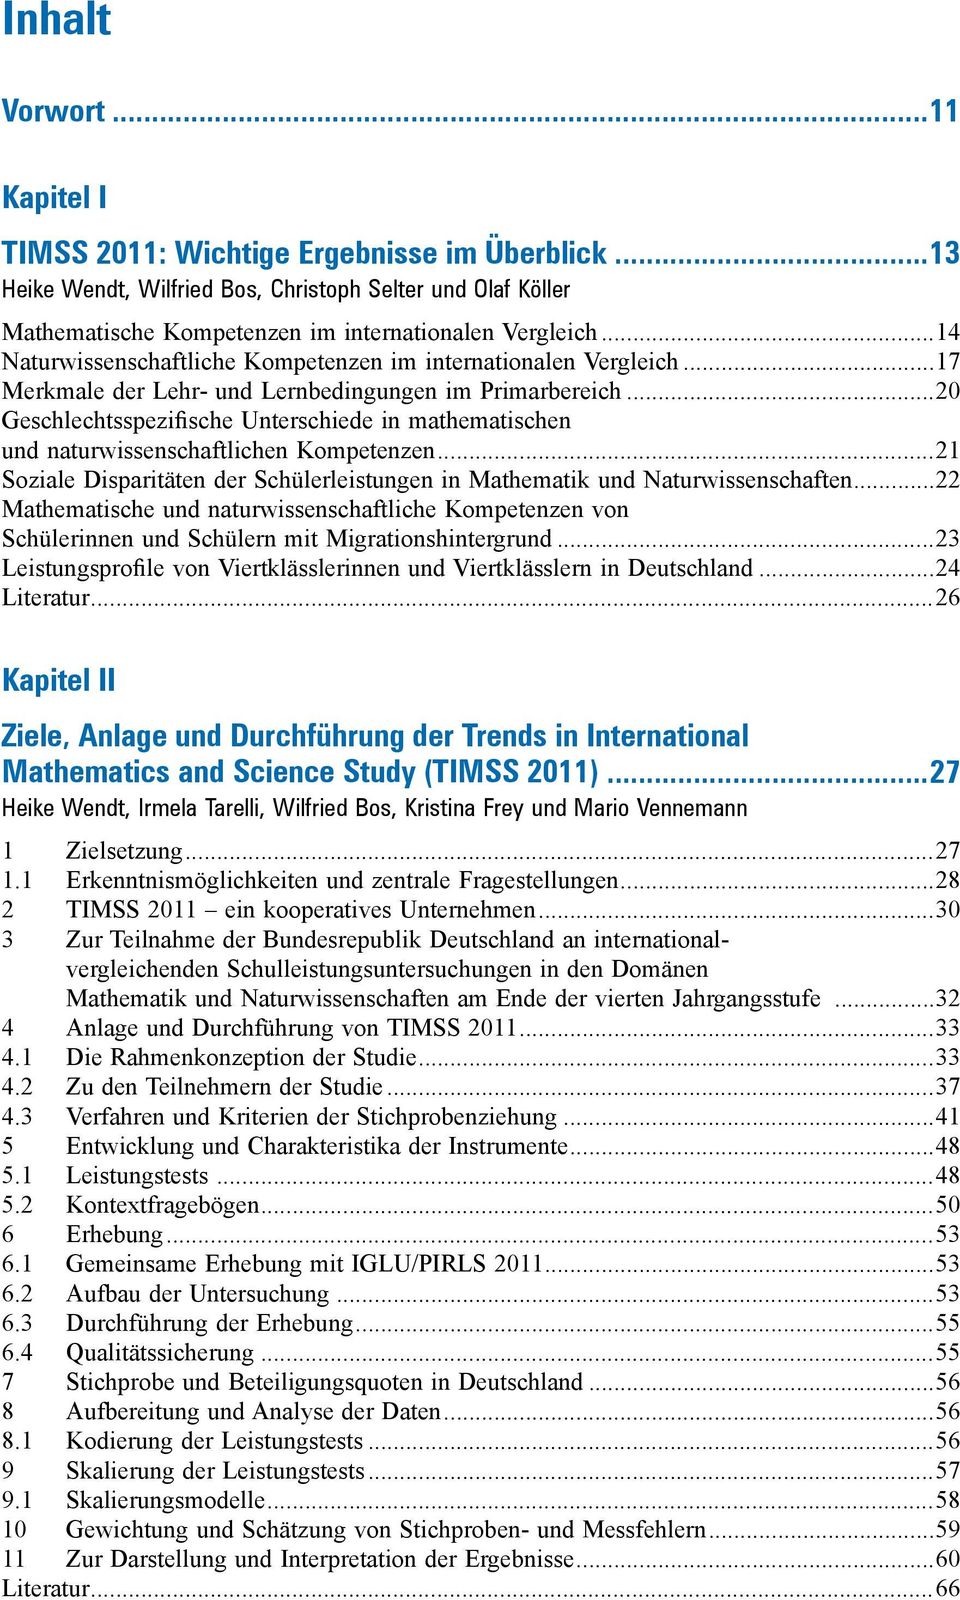 ..0 Geschlechtsspezifische Unterschiede in mathematischen und naturwissenschaftlichen Kompetenzen...1 Soziale Disparitäten der Schülerleistungen in Mathematik und Naturwissenschaften.